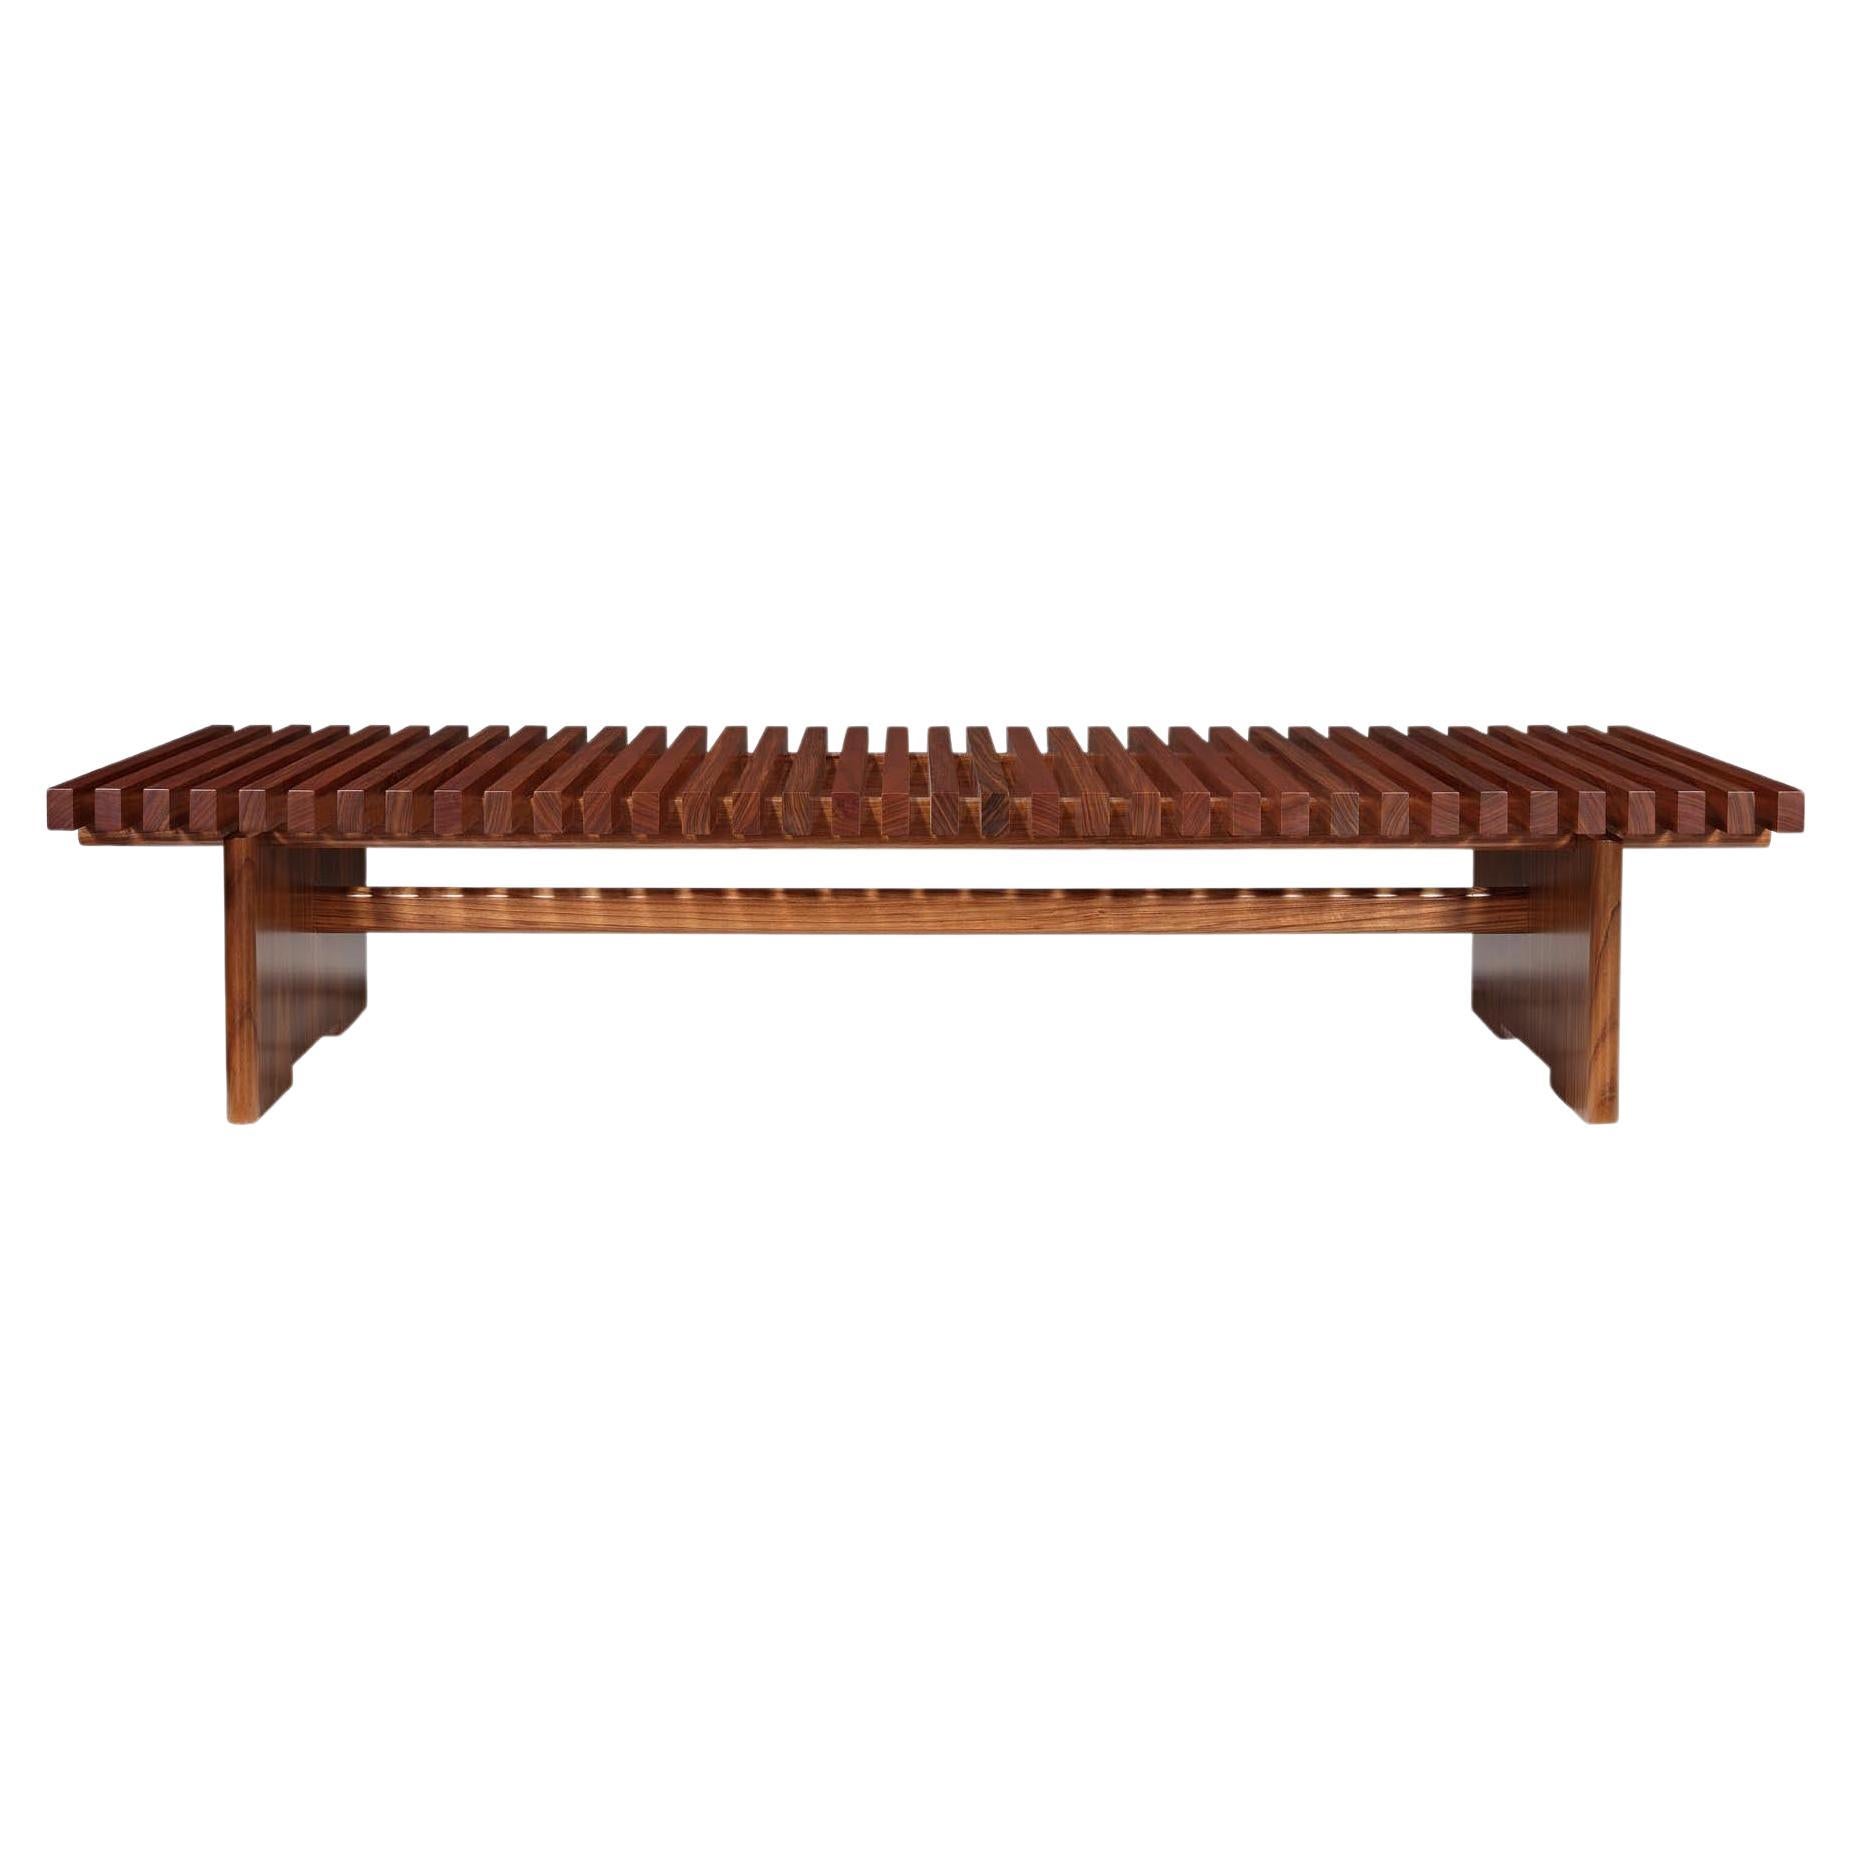 Suivant les principes du design minimaliste et multifonctionnel, inspiré de la menuiserie japonaise et où les joints de bois sont la clé pour produire cette table. Une table d'apparence légère, mise en valeur par le plateau à lattes, les pieds et le